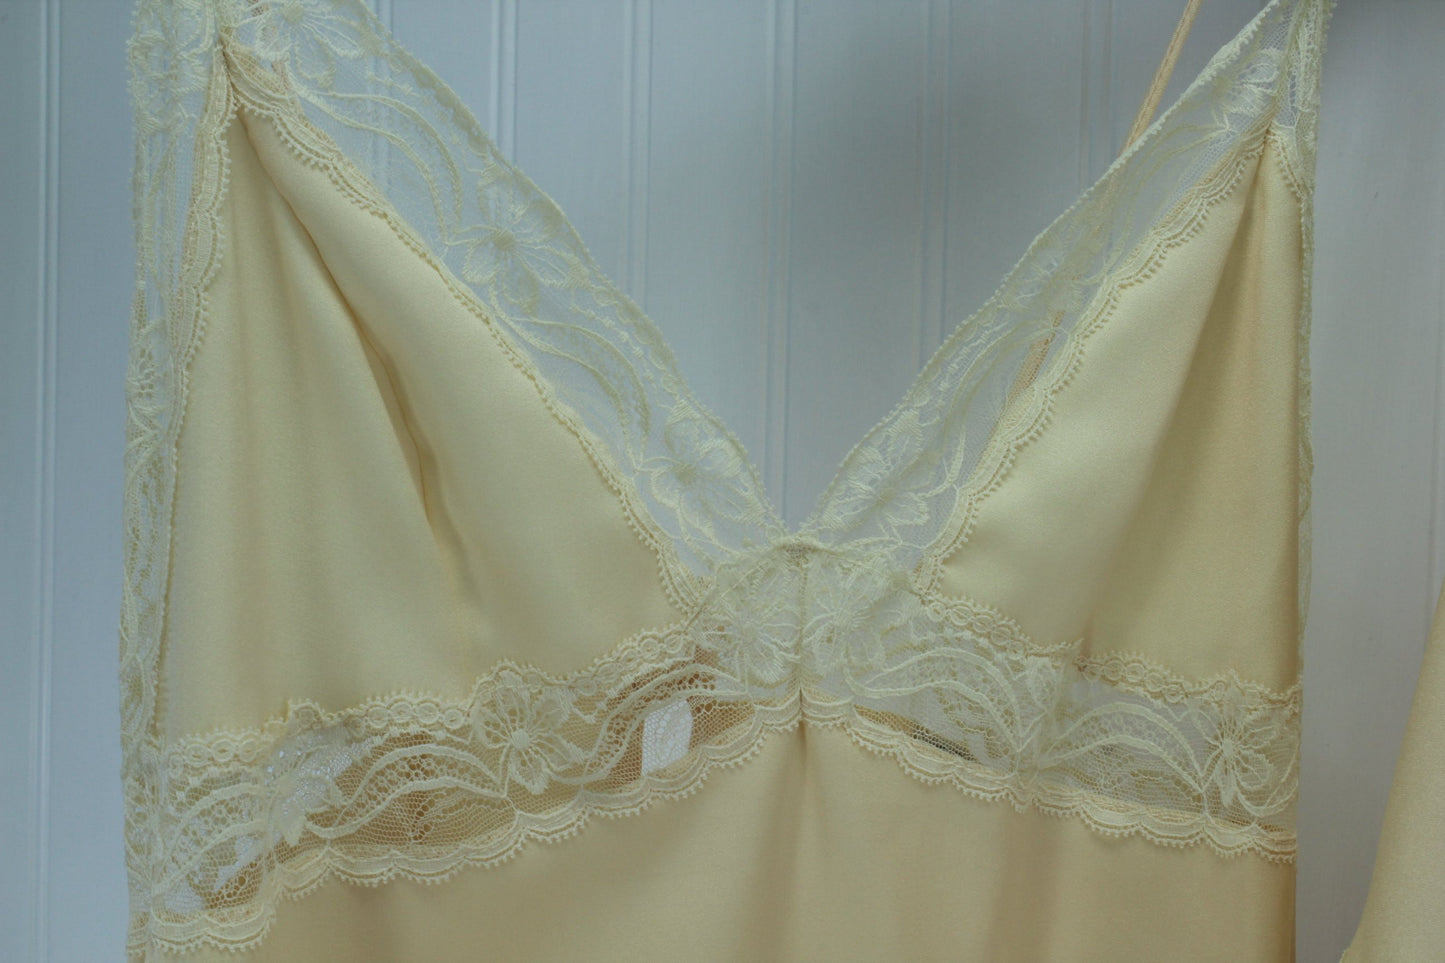 QUINTANNA Gown Peignoir Set  Nude Matching Lace Exquisite Trousseau Size M honeymoon